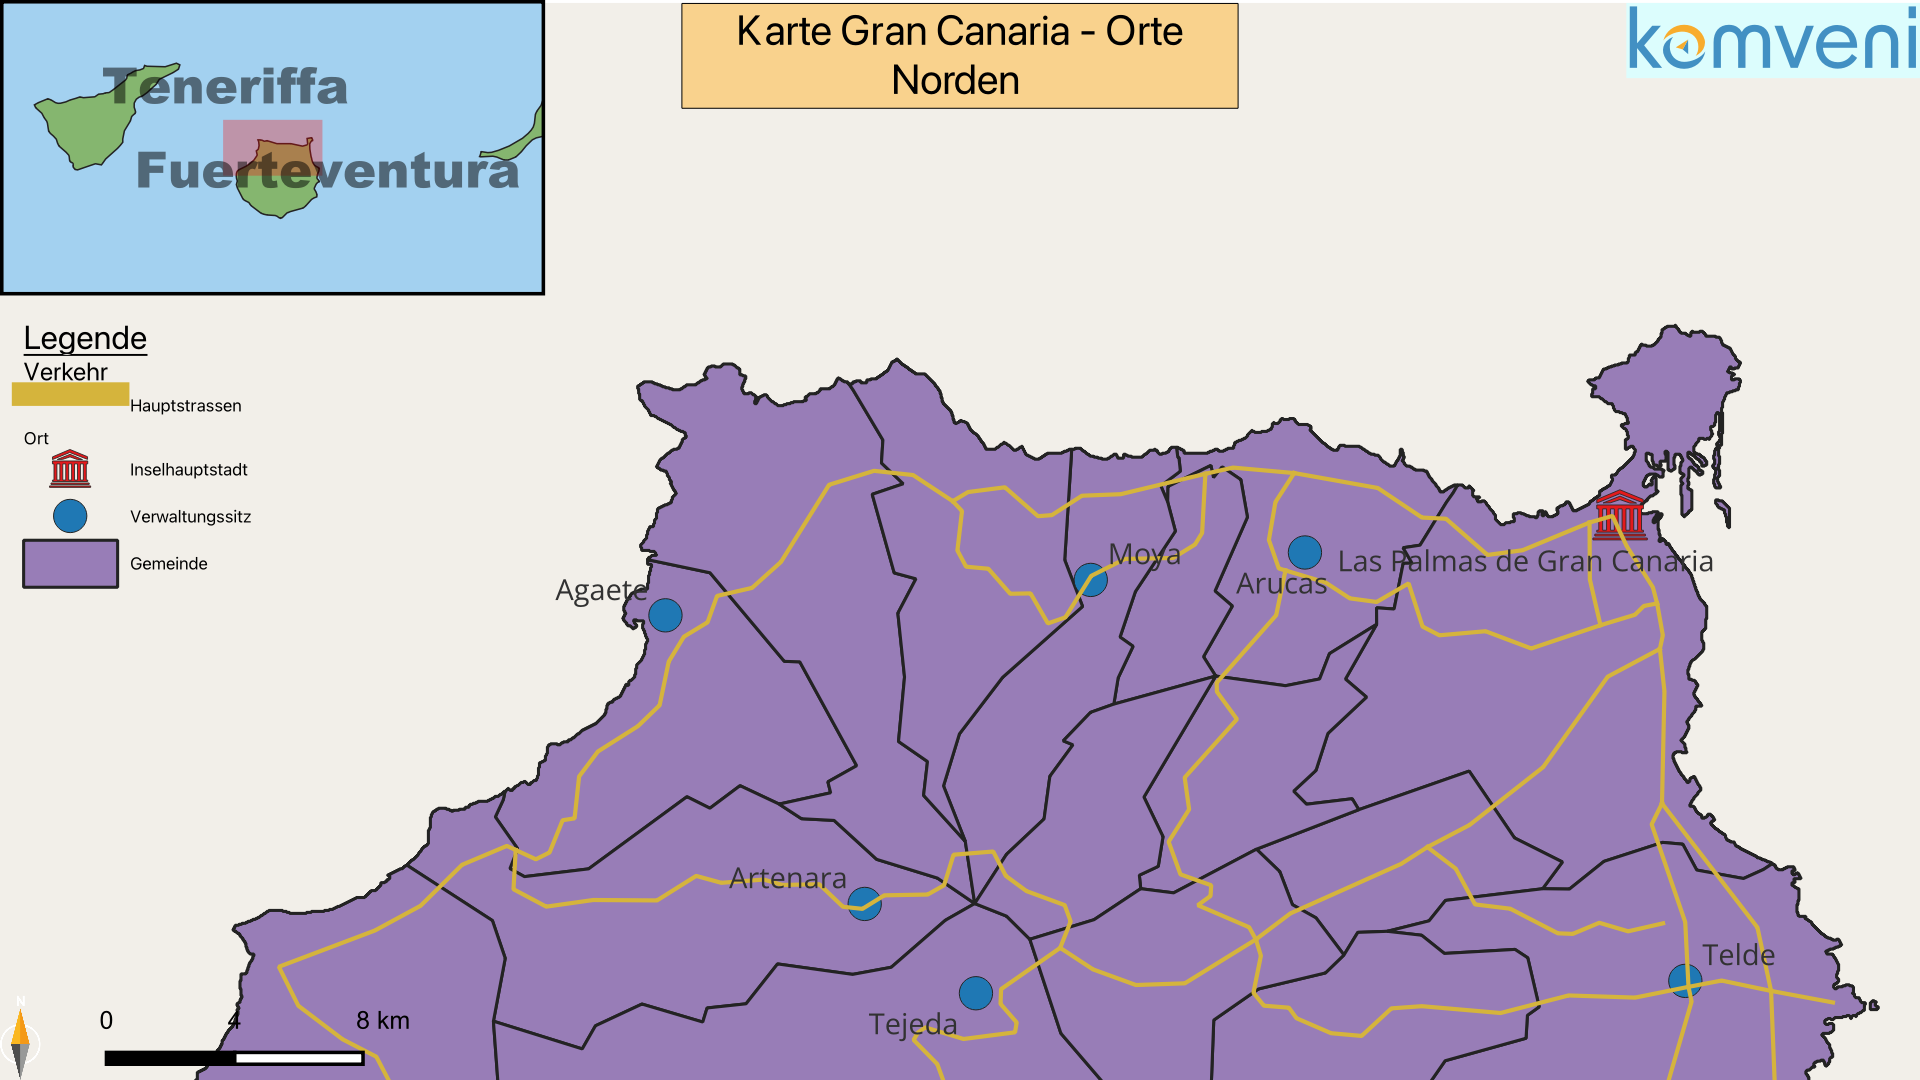 Karte Gran Canaria Orte Norden